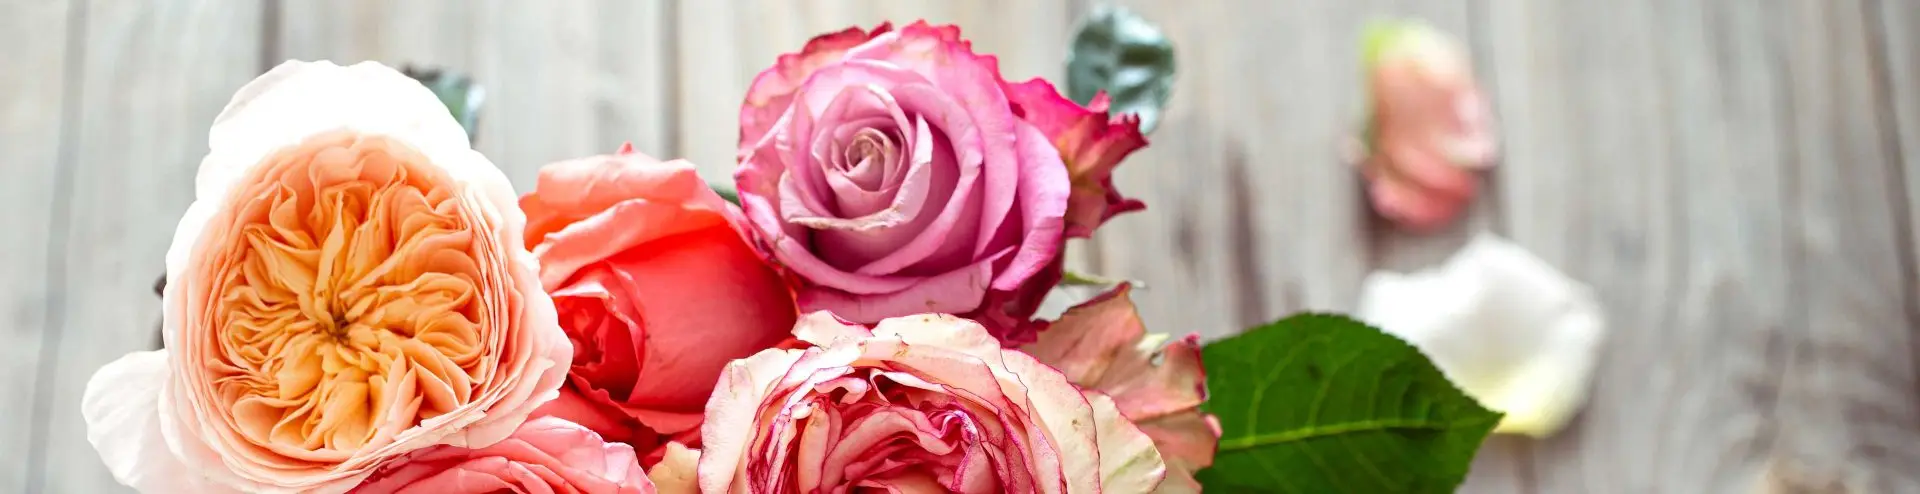 7 claves para conservar un ramo de rosas